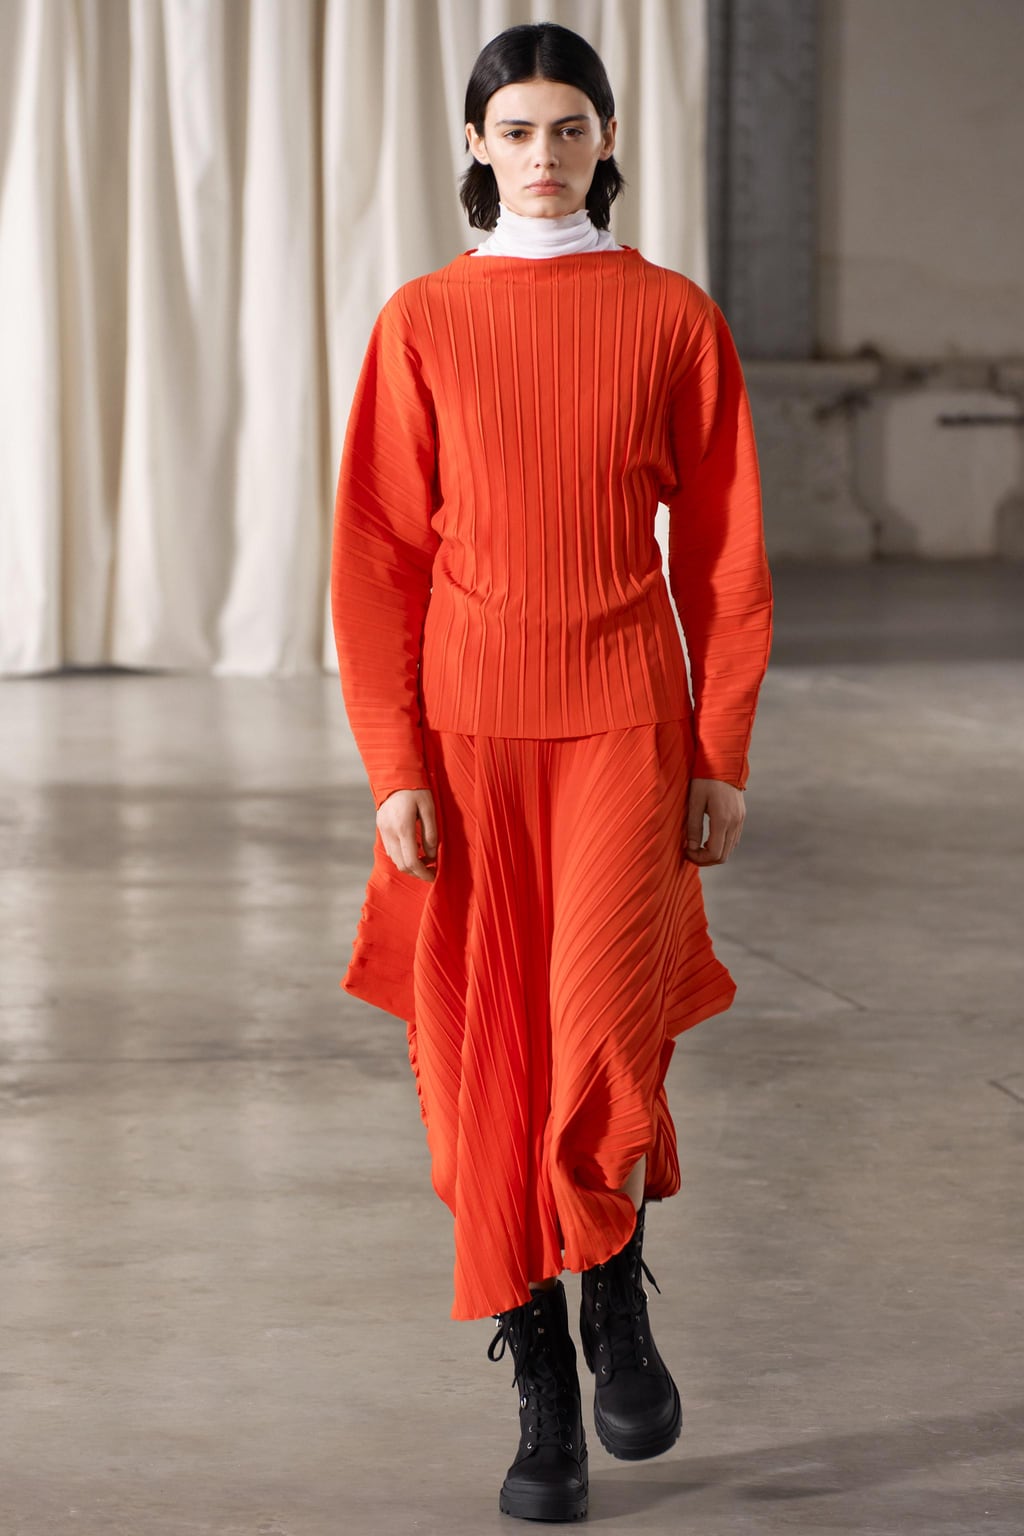 Асимметричная юбка со складками ZARA, красный апельсин женская длинная юбка плиссированная юбка трапеция с высокой талией универсальная облегающая юбка с эластичным поясом 2022